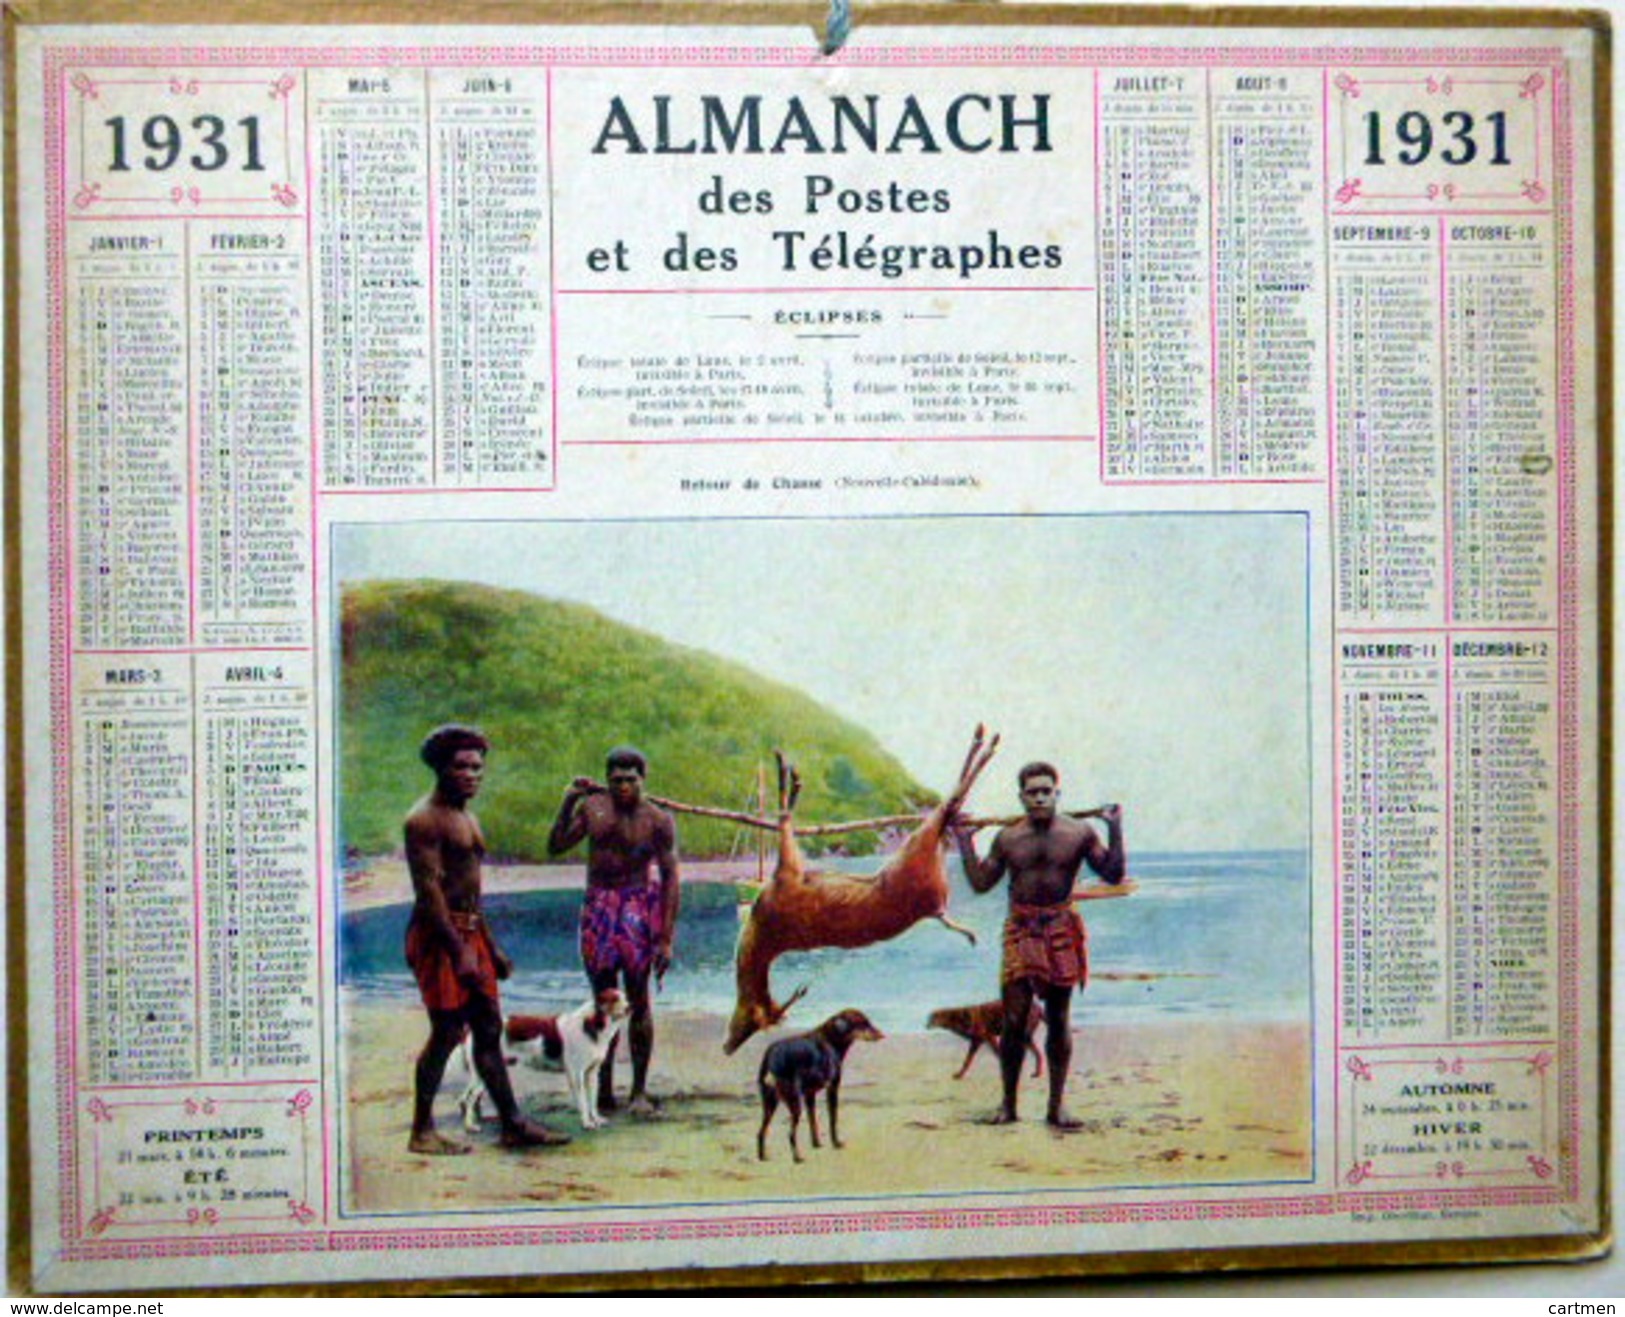 CALENDRIER ALMANACH DES POSTES PTT 1931  CHASSE  DENOUVELLE CALEDONIE DEPARTEMENT DE L'OISE  POSTES ET TELECOMMUNICATION - Formato Grande : 1921-40